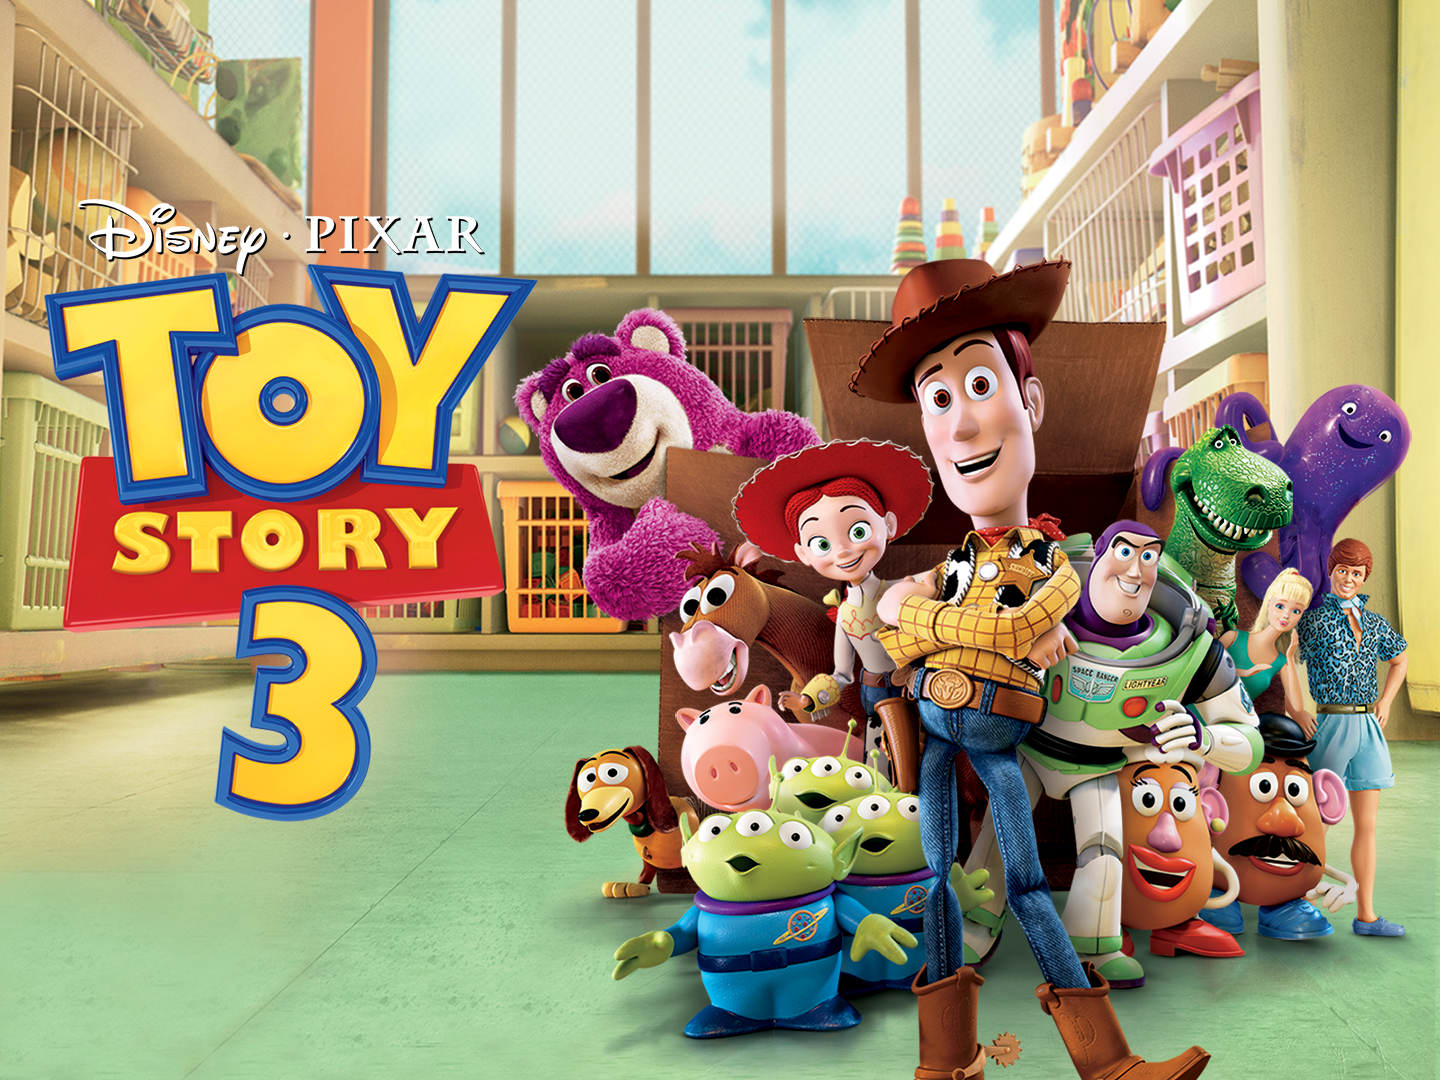 Toy Story 3 - Câu chuyện đồ chơi phần 3